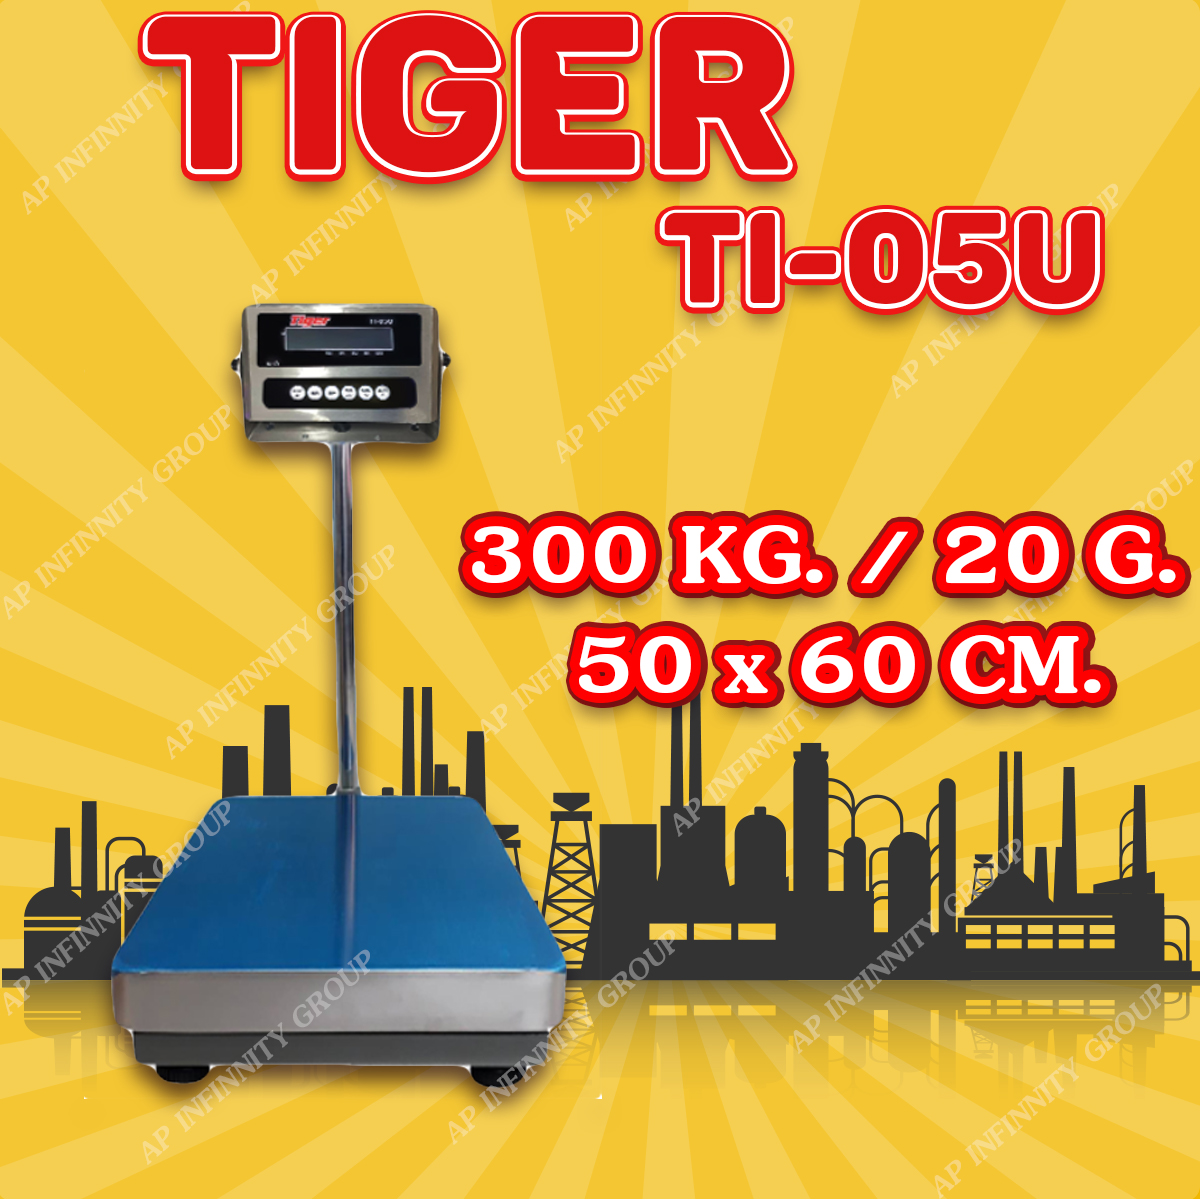 ตาชั่งดิจิตอล เครื่องชั่งดิจิตอล เครื่องชั่งตั้งพื้น 300kg ความละเอียด 20g ยี่ห้อ Tiger รุ่น TI–05U แท่นชั่งขนาดฐาน 50x 60cm มีช่อง USB สำหรับการบันทึกข้อมูลได้ รูปที่ 1